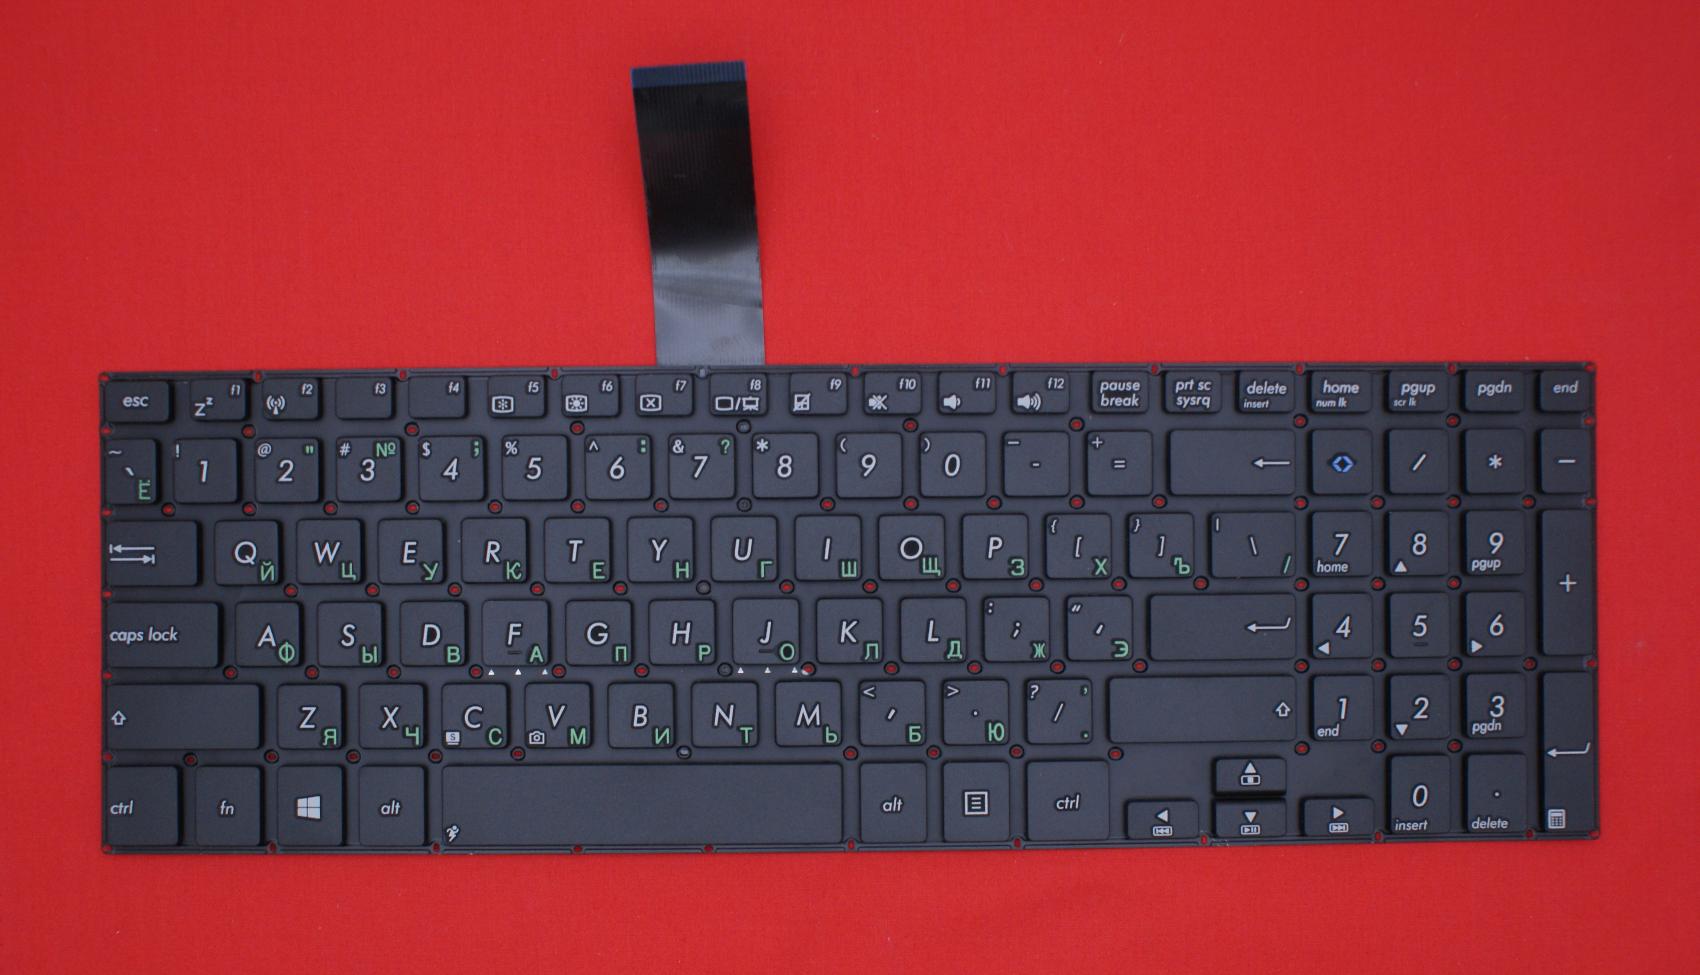 Клавиатура для ноутбука Asus V551, S551, K551